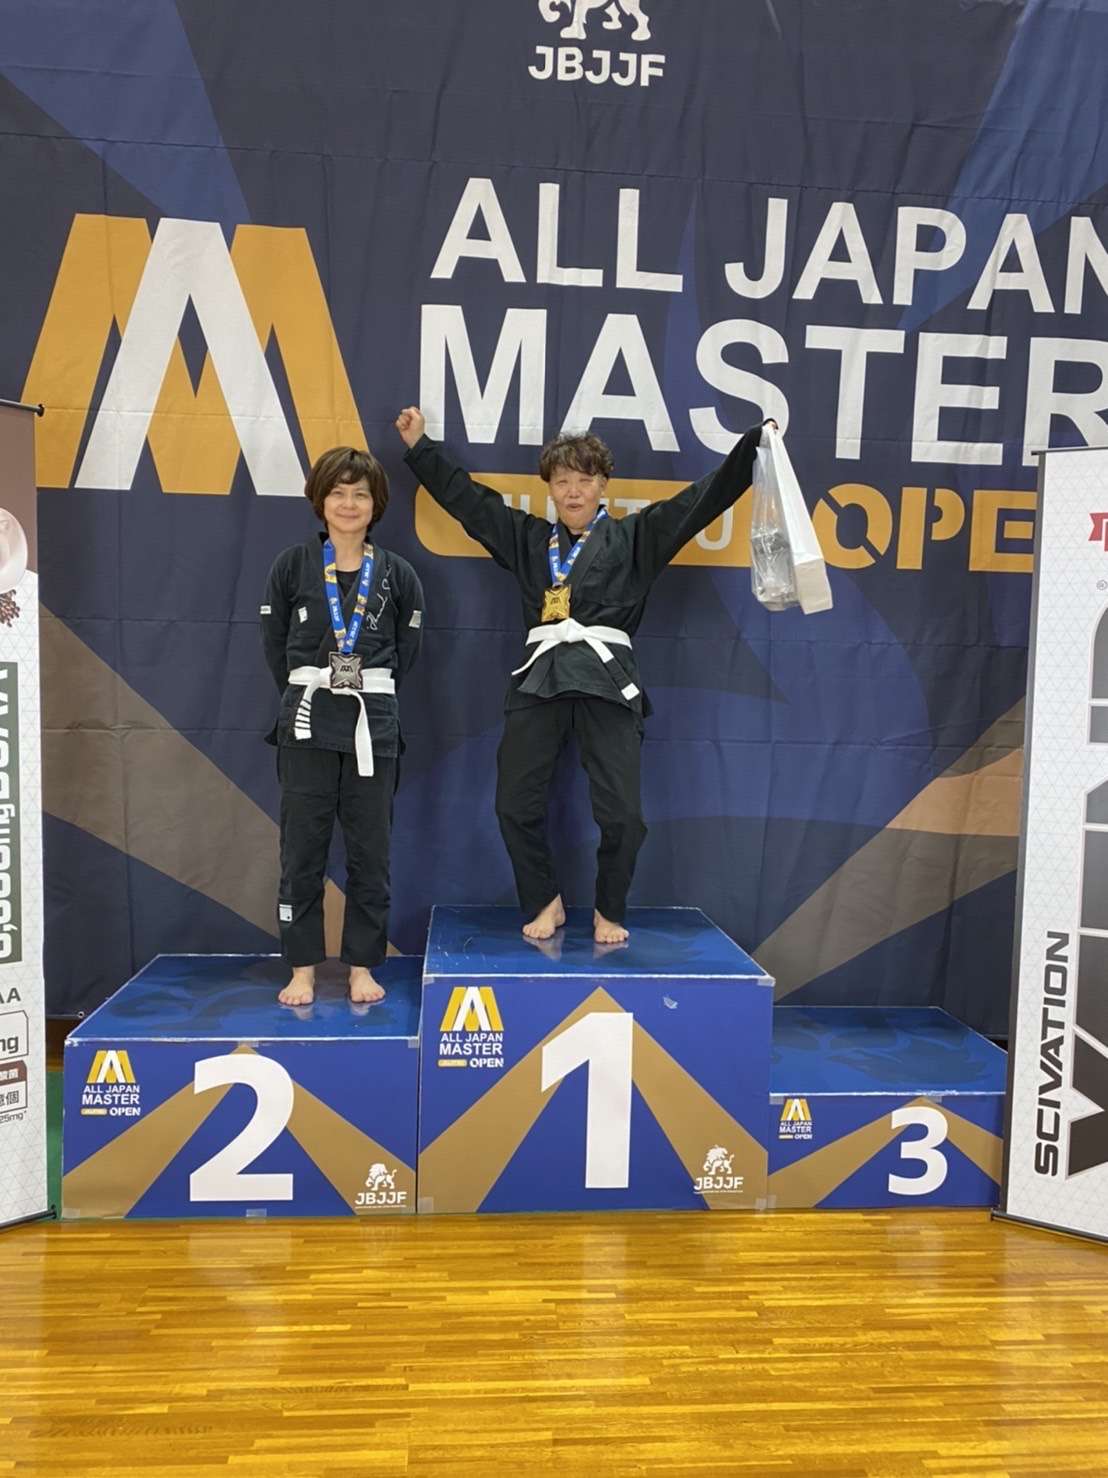 【試合レポート】第5回全日本マスター柔術オープントーナメント